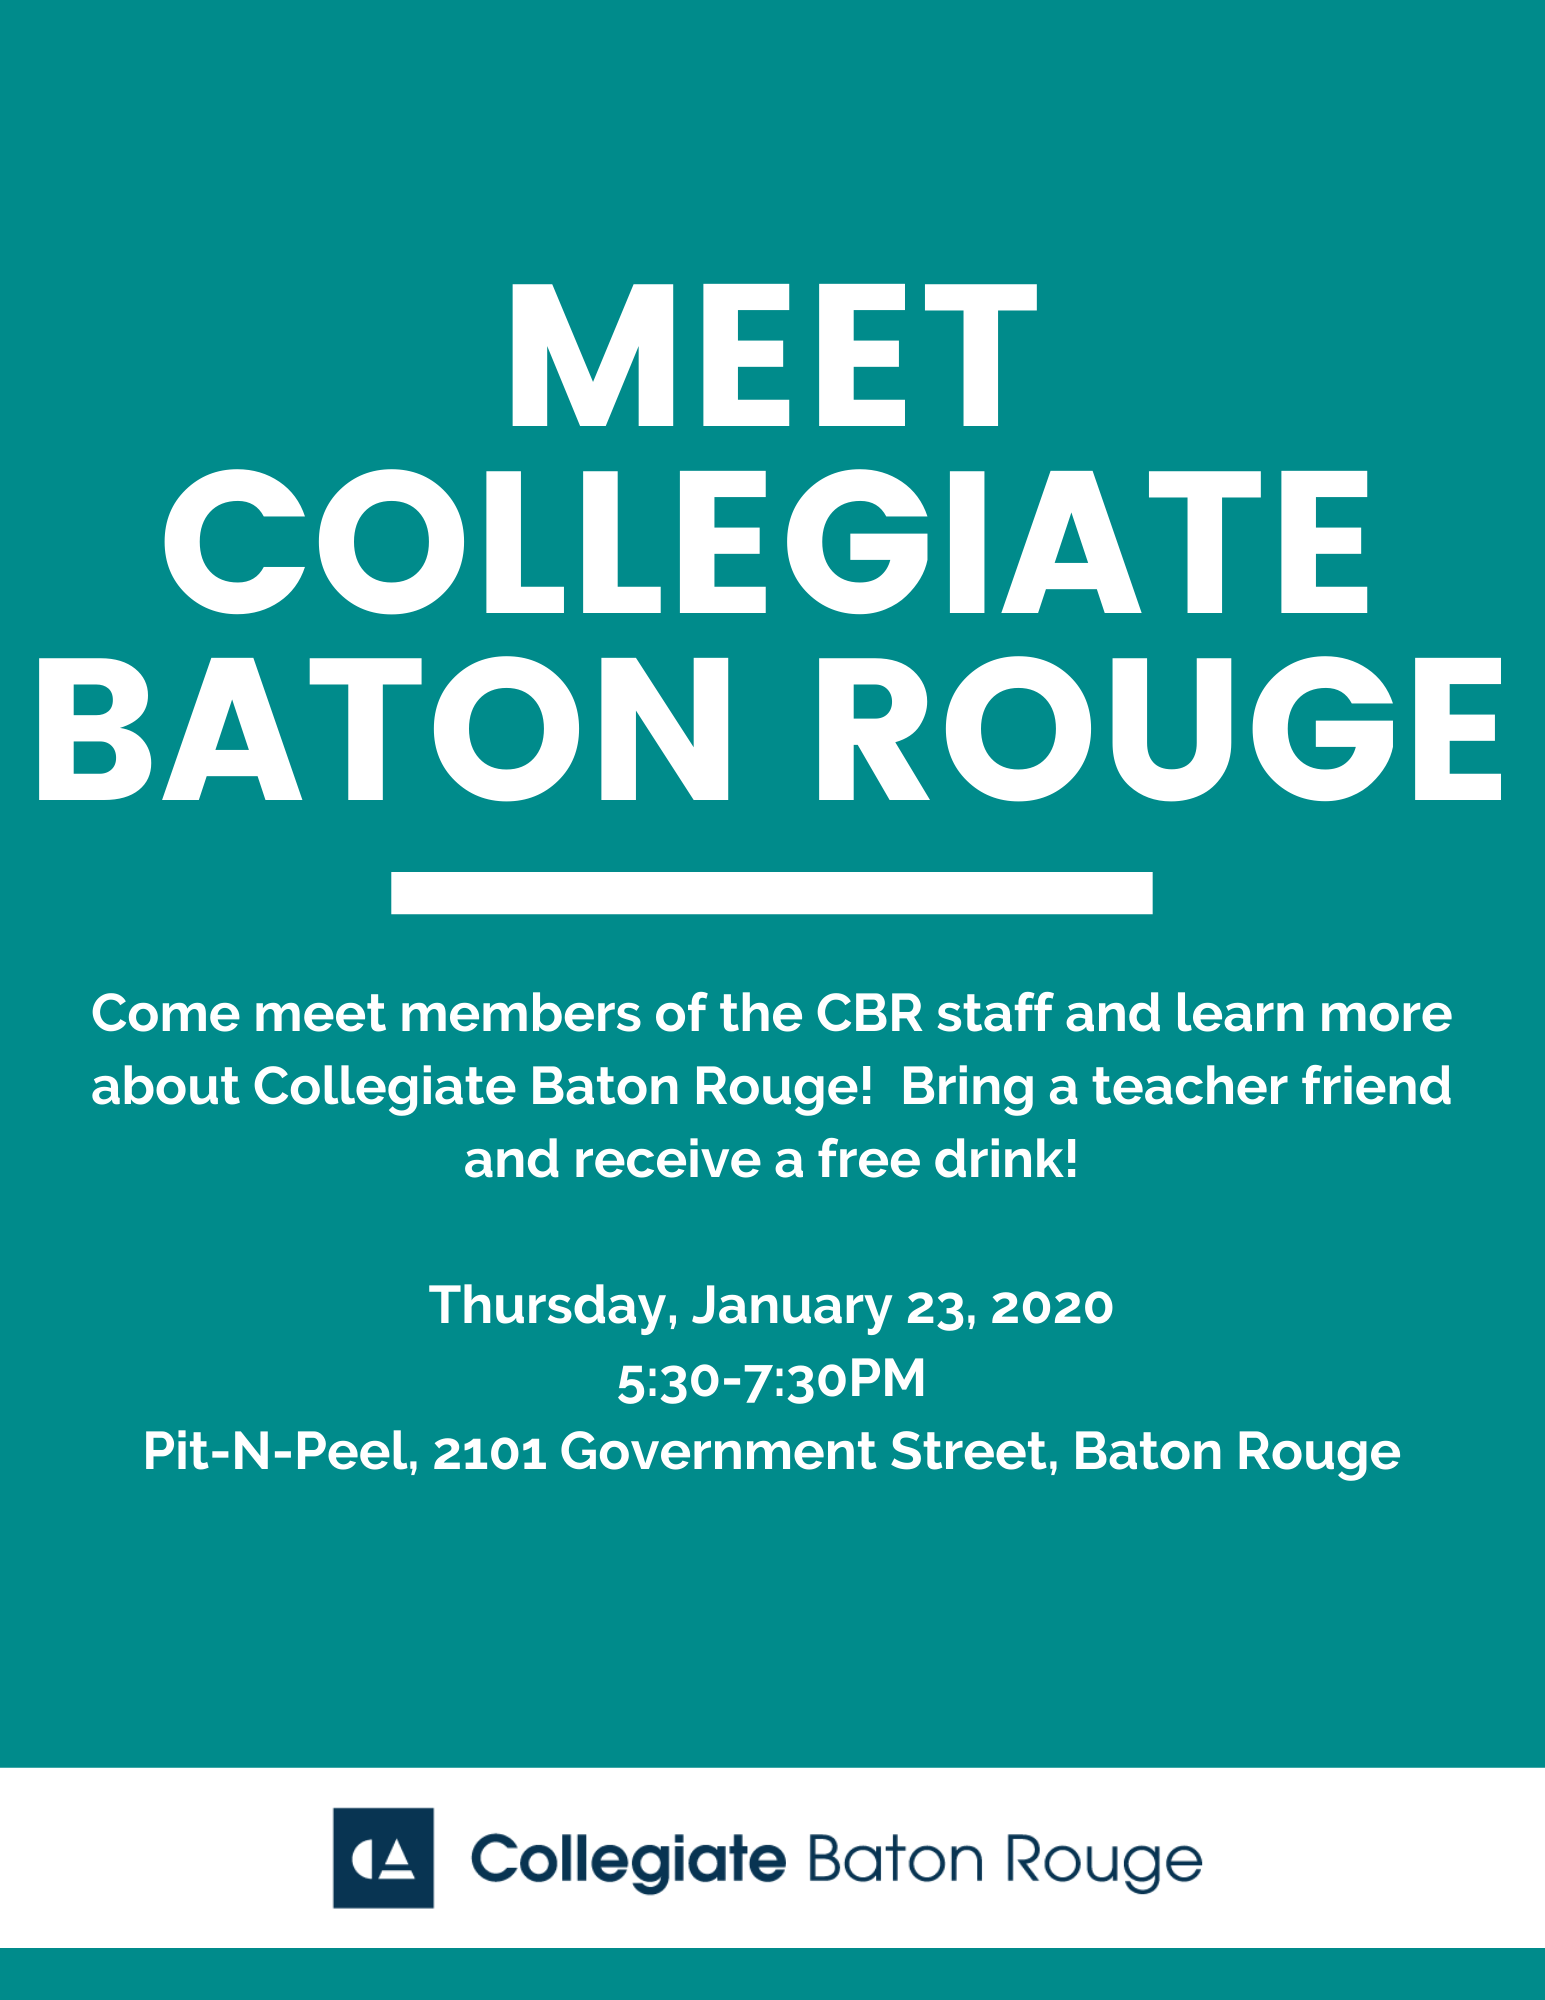 Meet Collegiate Baton Rouge